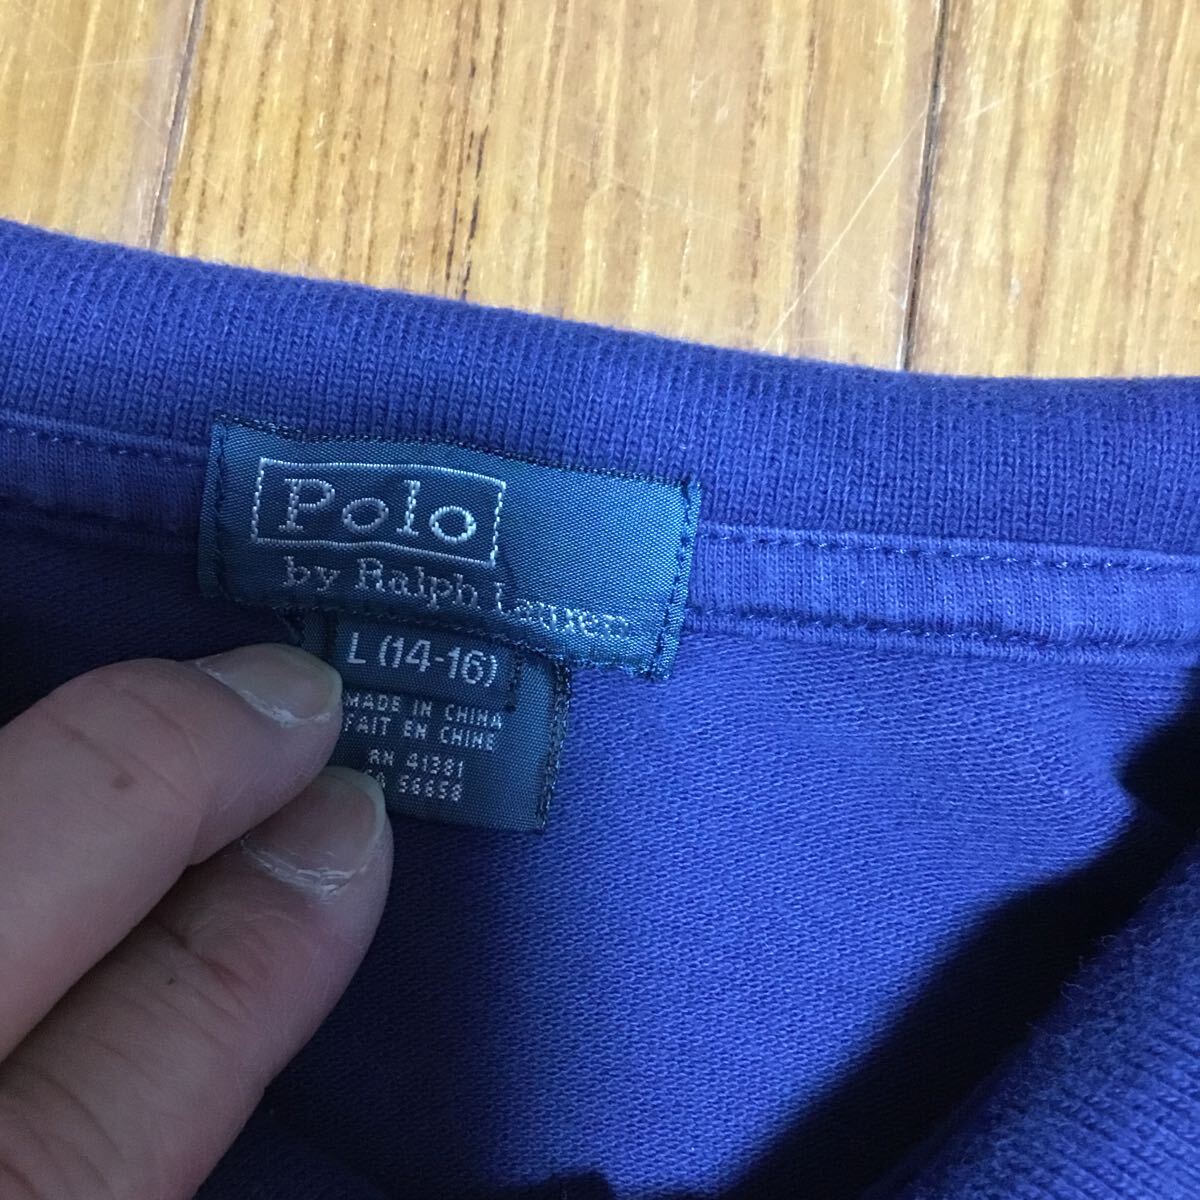 POLO RALPH LAUREN ポロラルフローレン 半袖 ポロシャツ ビッグポニー メンズ サイズ14-16L メンズMくらい ネイビーの画像2